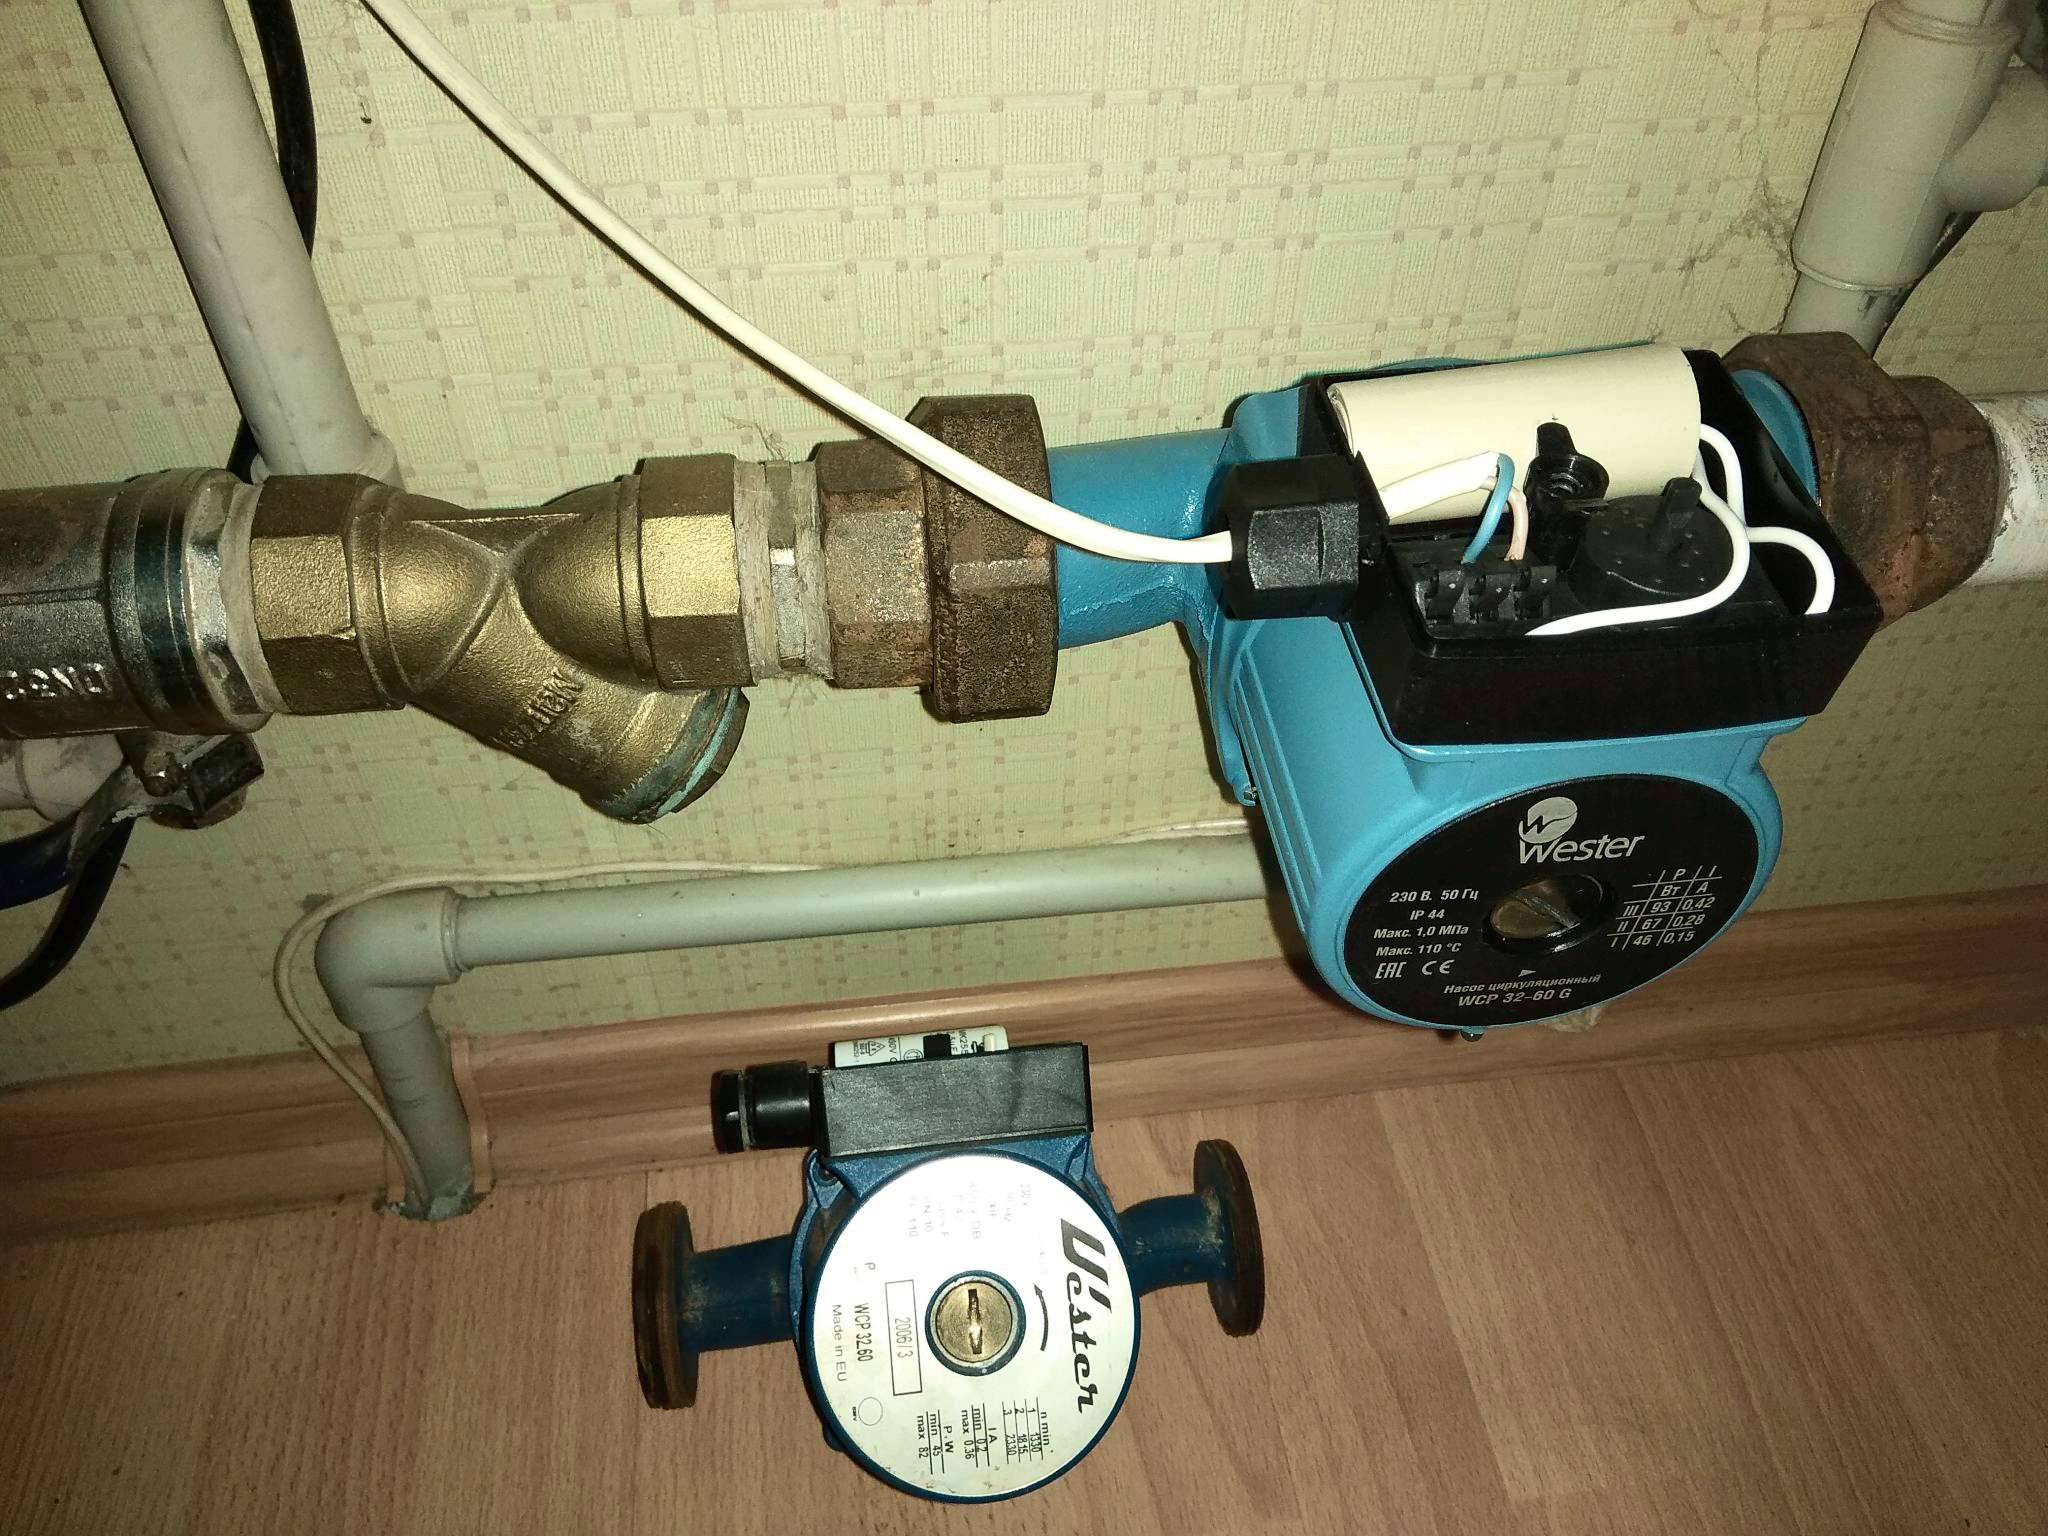 Установка циркуляционного насоса в системе отопления в частном доме - особенности монтажа